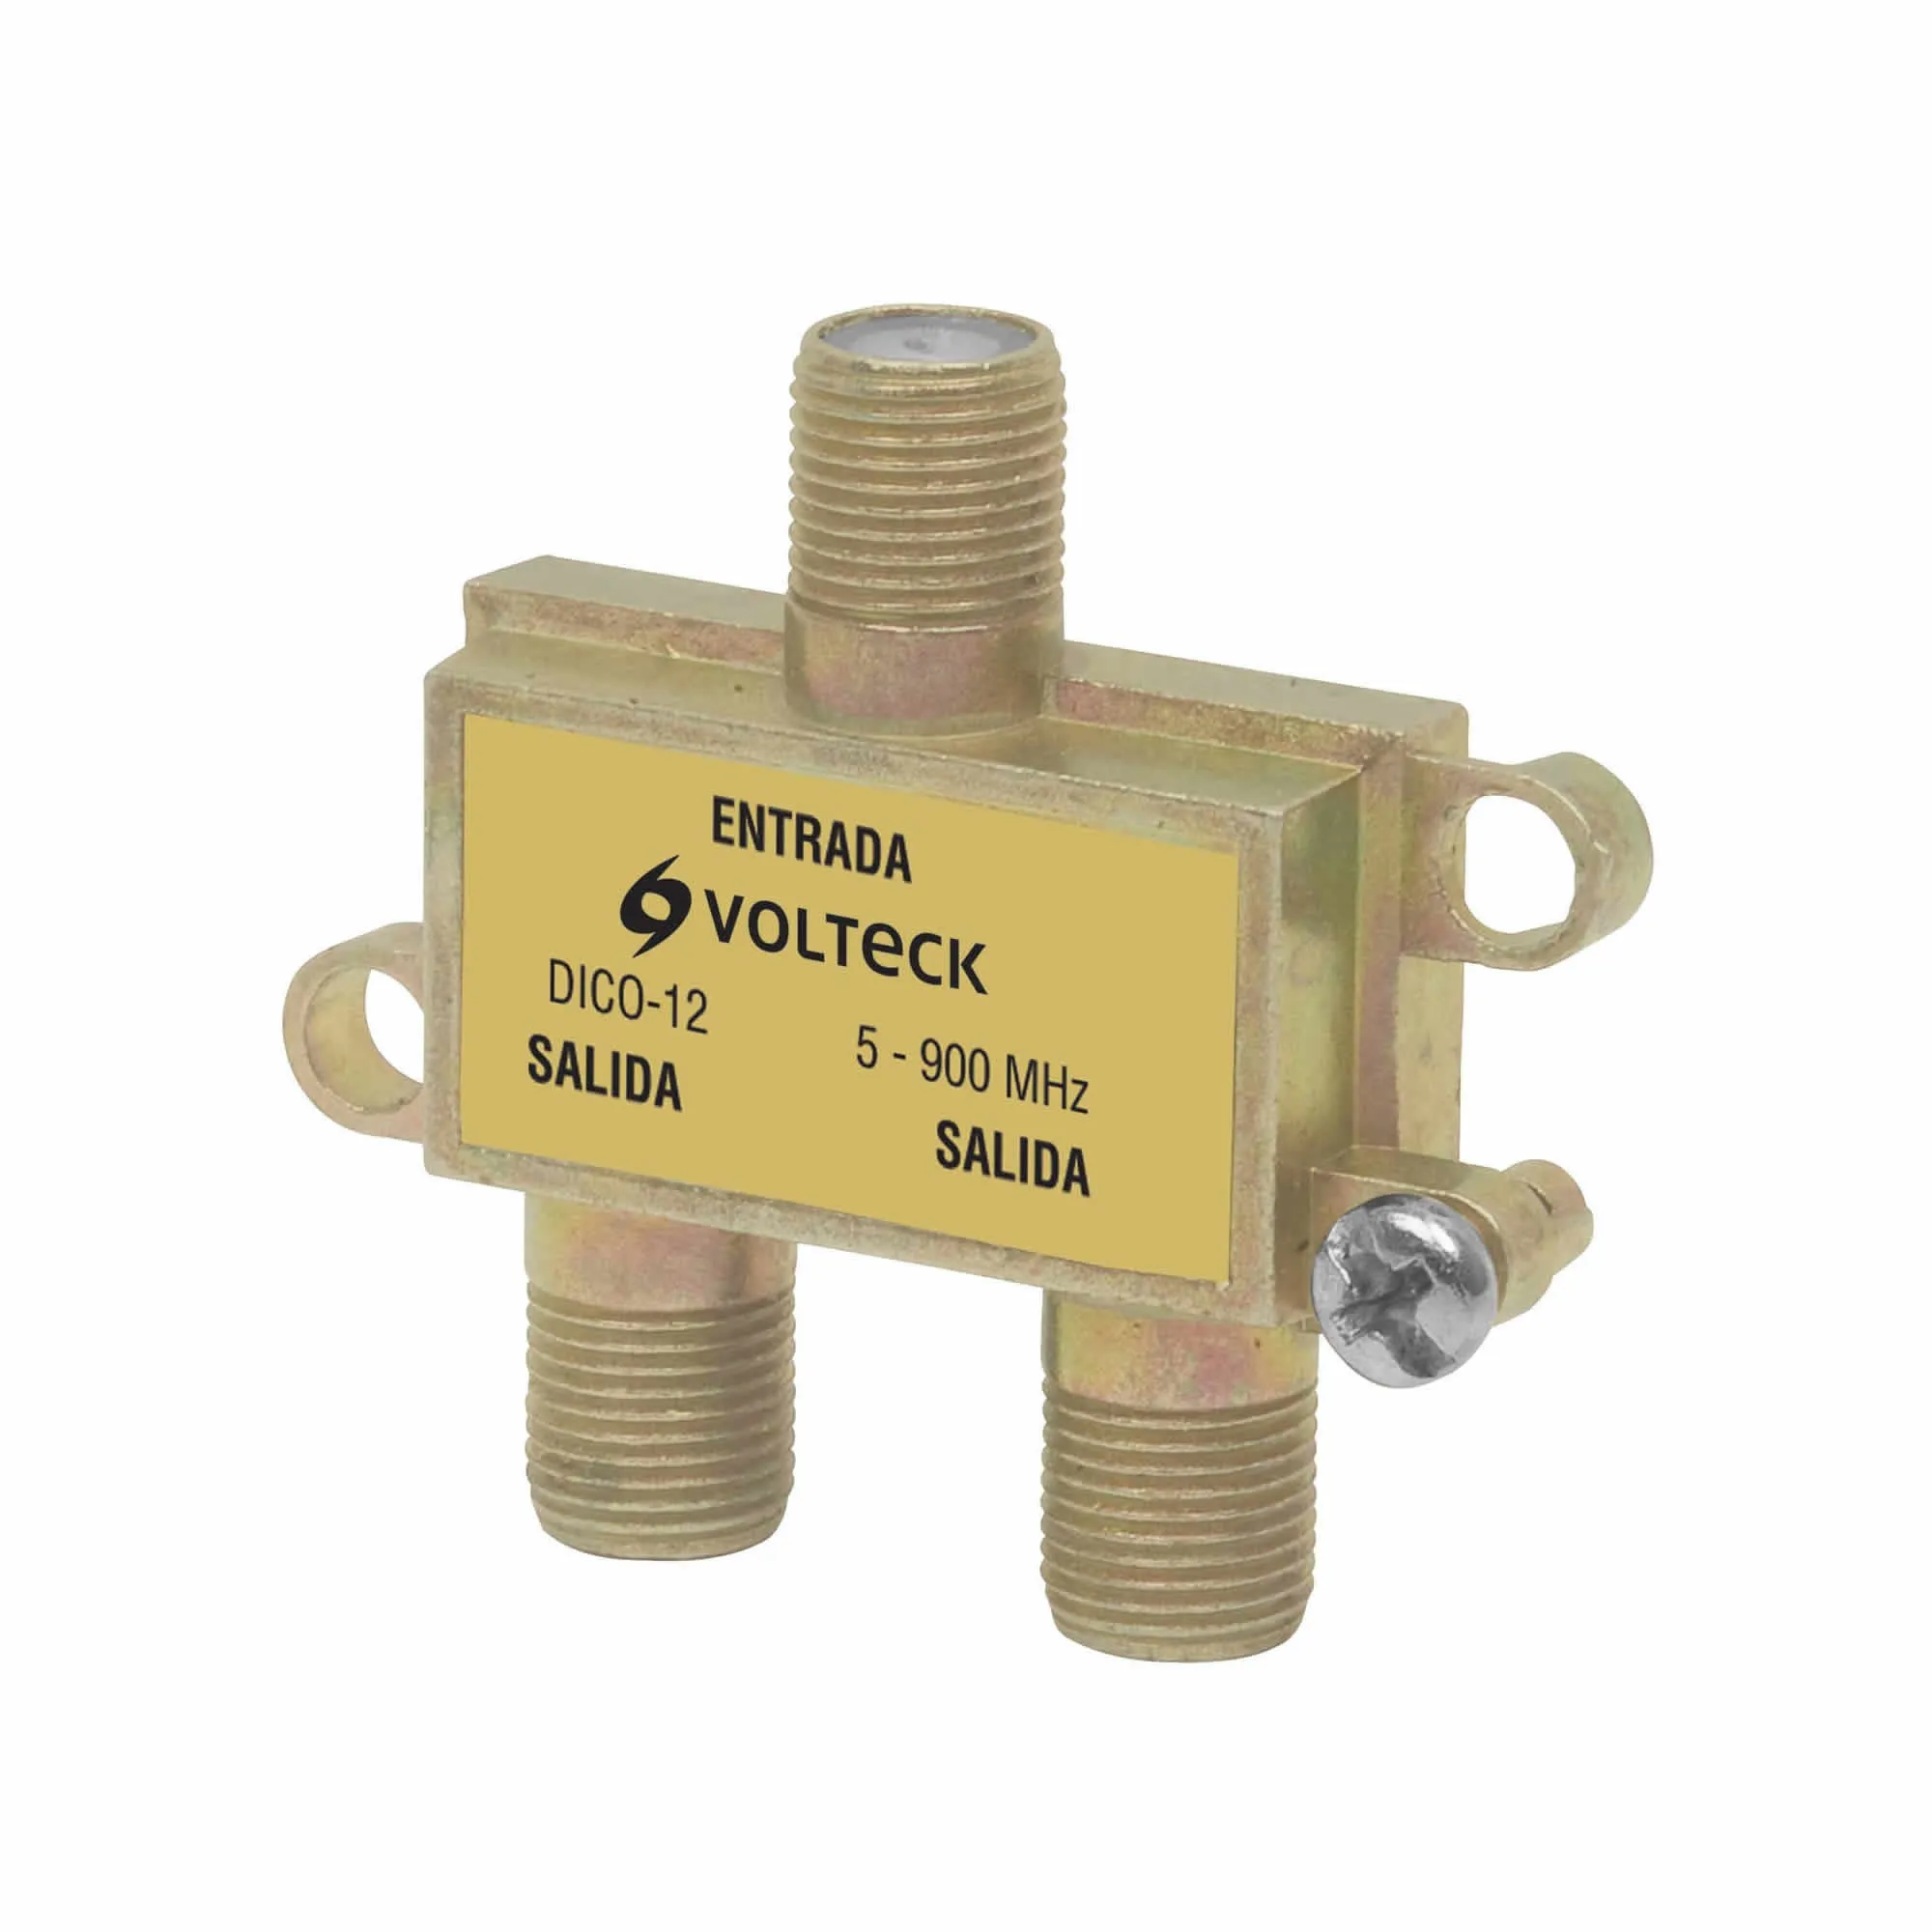 Divisor Splitter Anticorrosivo Para Cable Coaxial, 2 Salidas Volteck